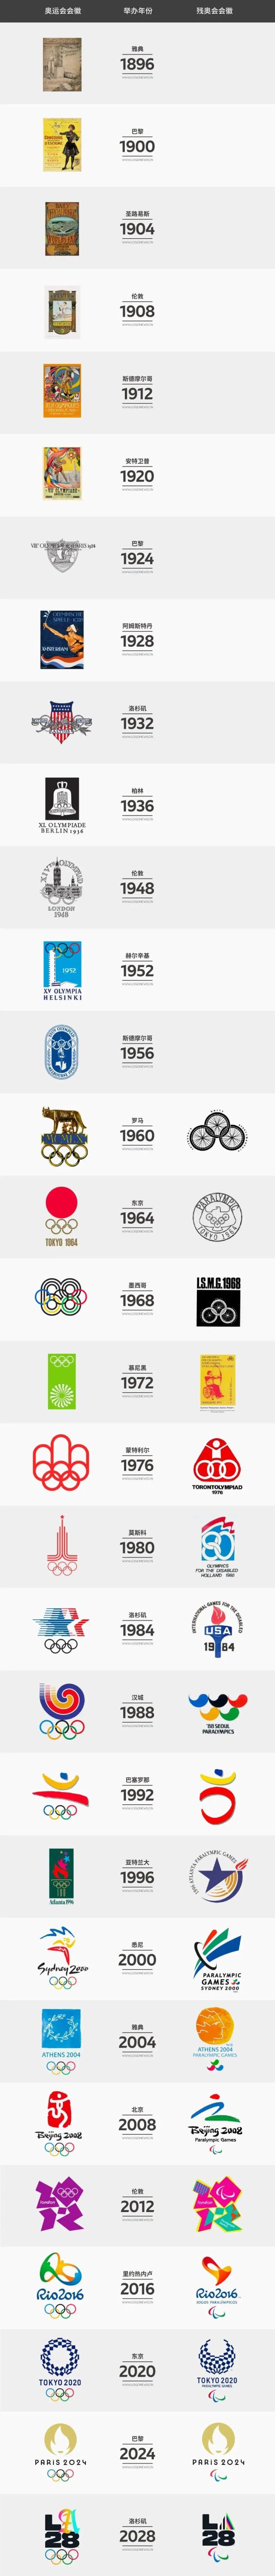 你最喜欢哪届奥运会会徽?